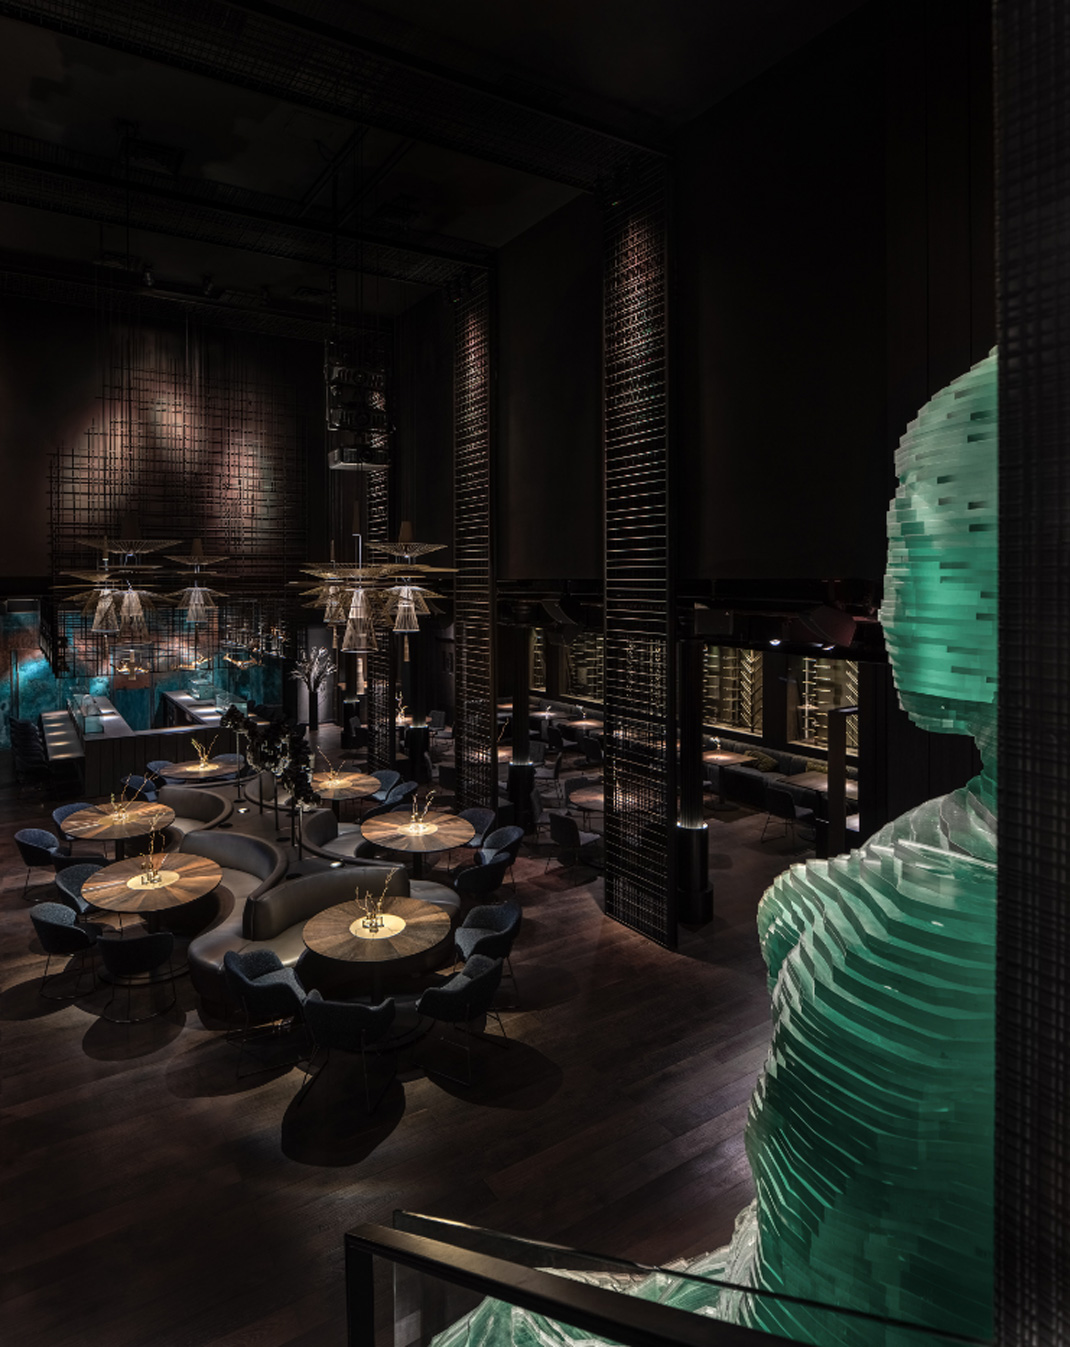 佛陀酒吧Buddha-Bar New York 纽约 酒吧 佛陀 现代艺术 logo设计 vi设计 空间设计